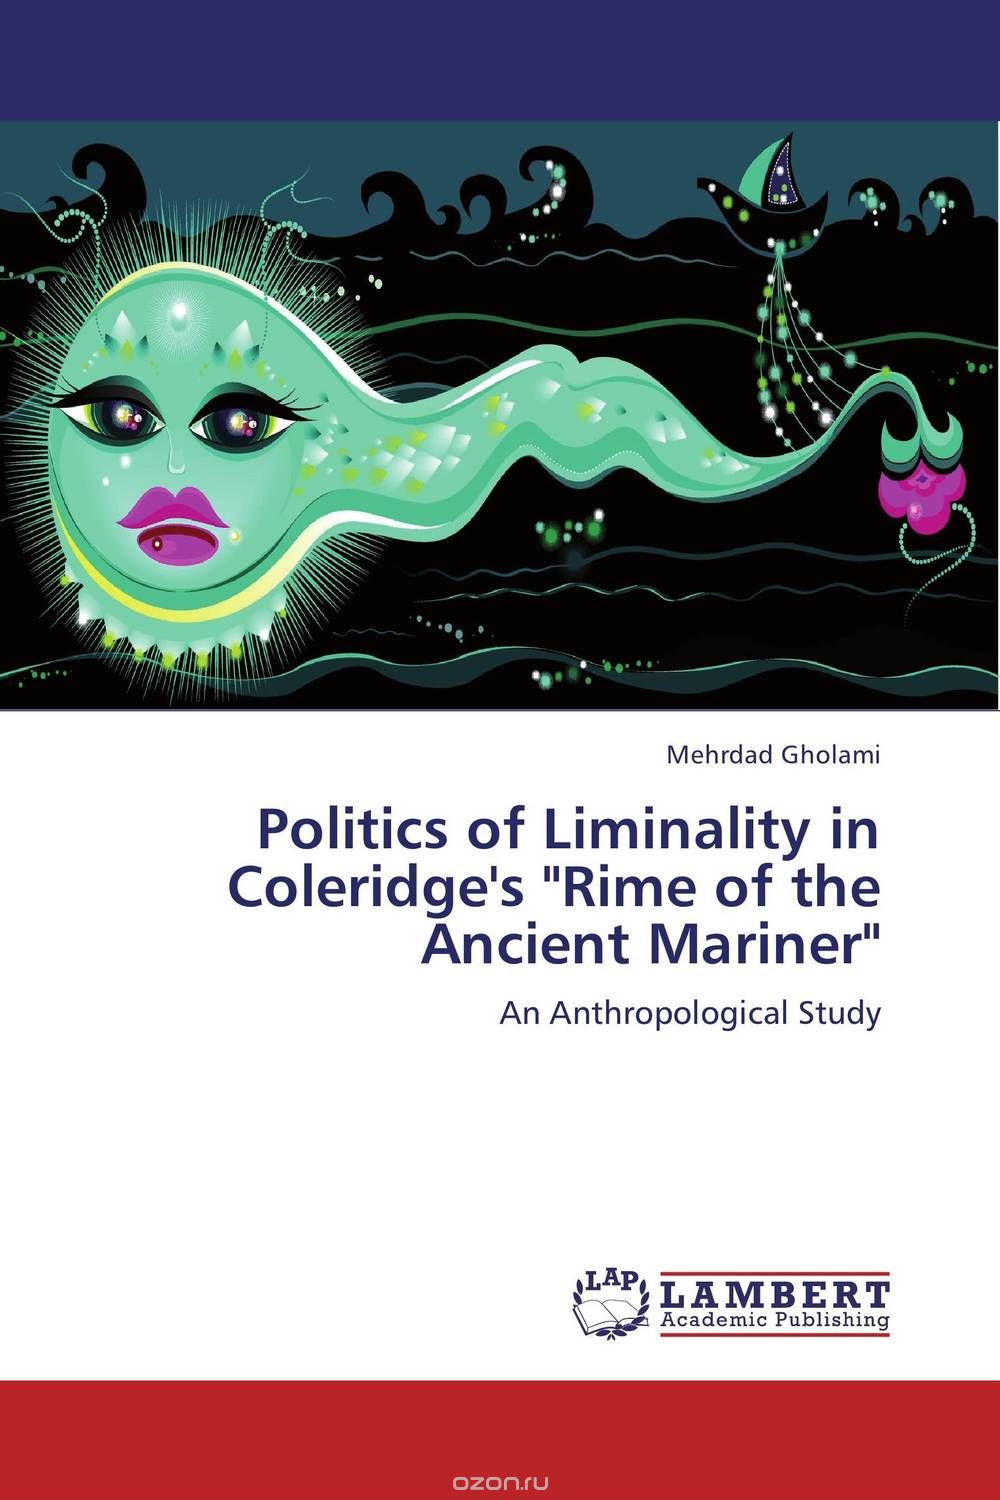 Скачать книгу "Politics of Liminality in Coleridge's "Rime of the Ancient Mariner""